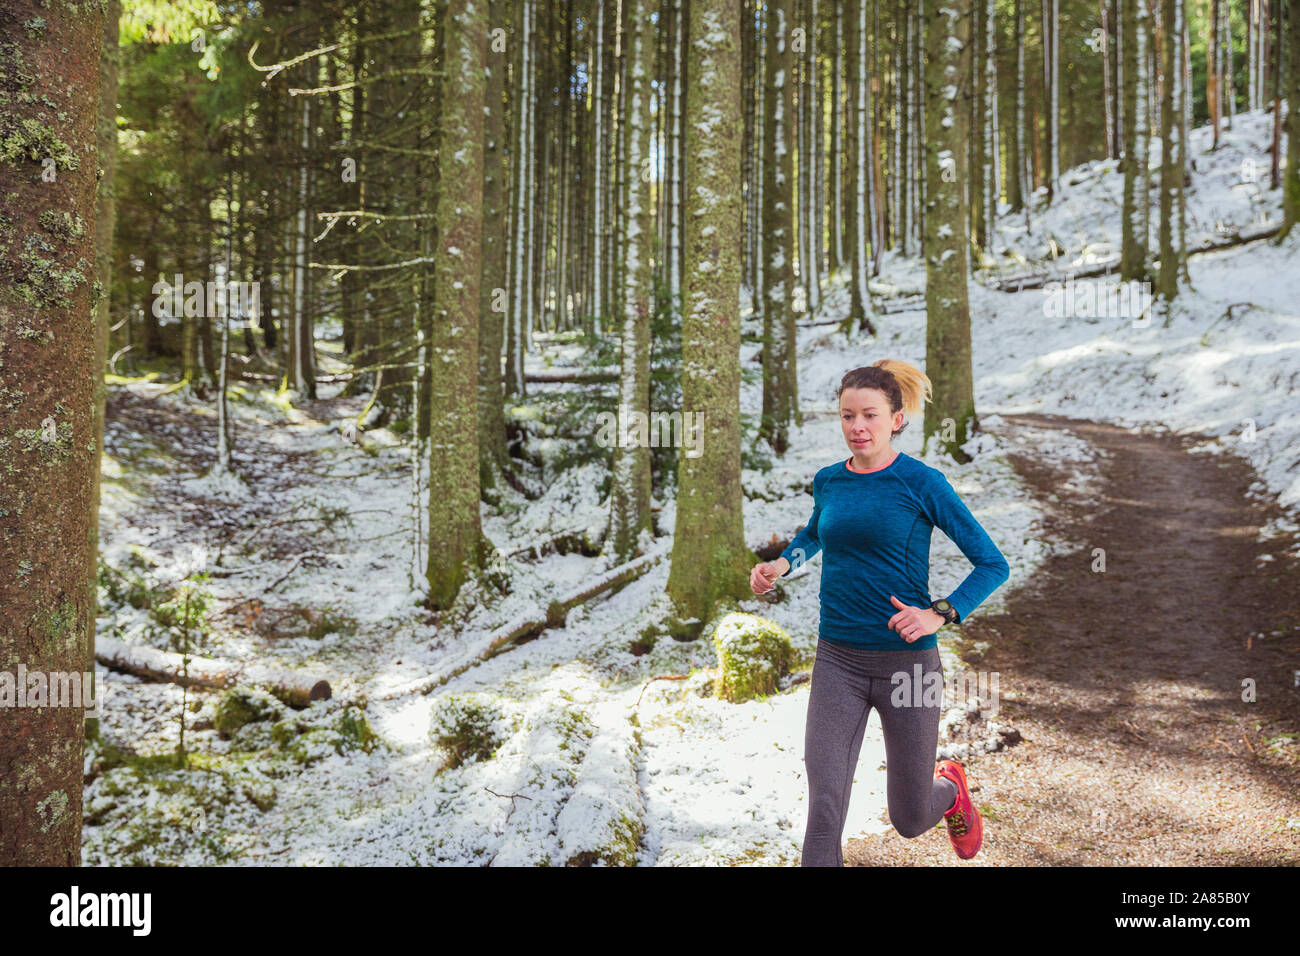 Frau joggen auf Trail im verschneiten Wald Stockfoto